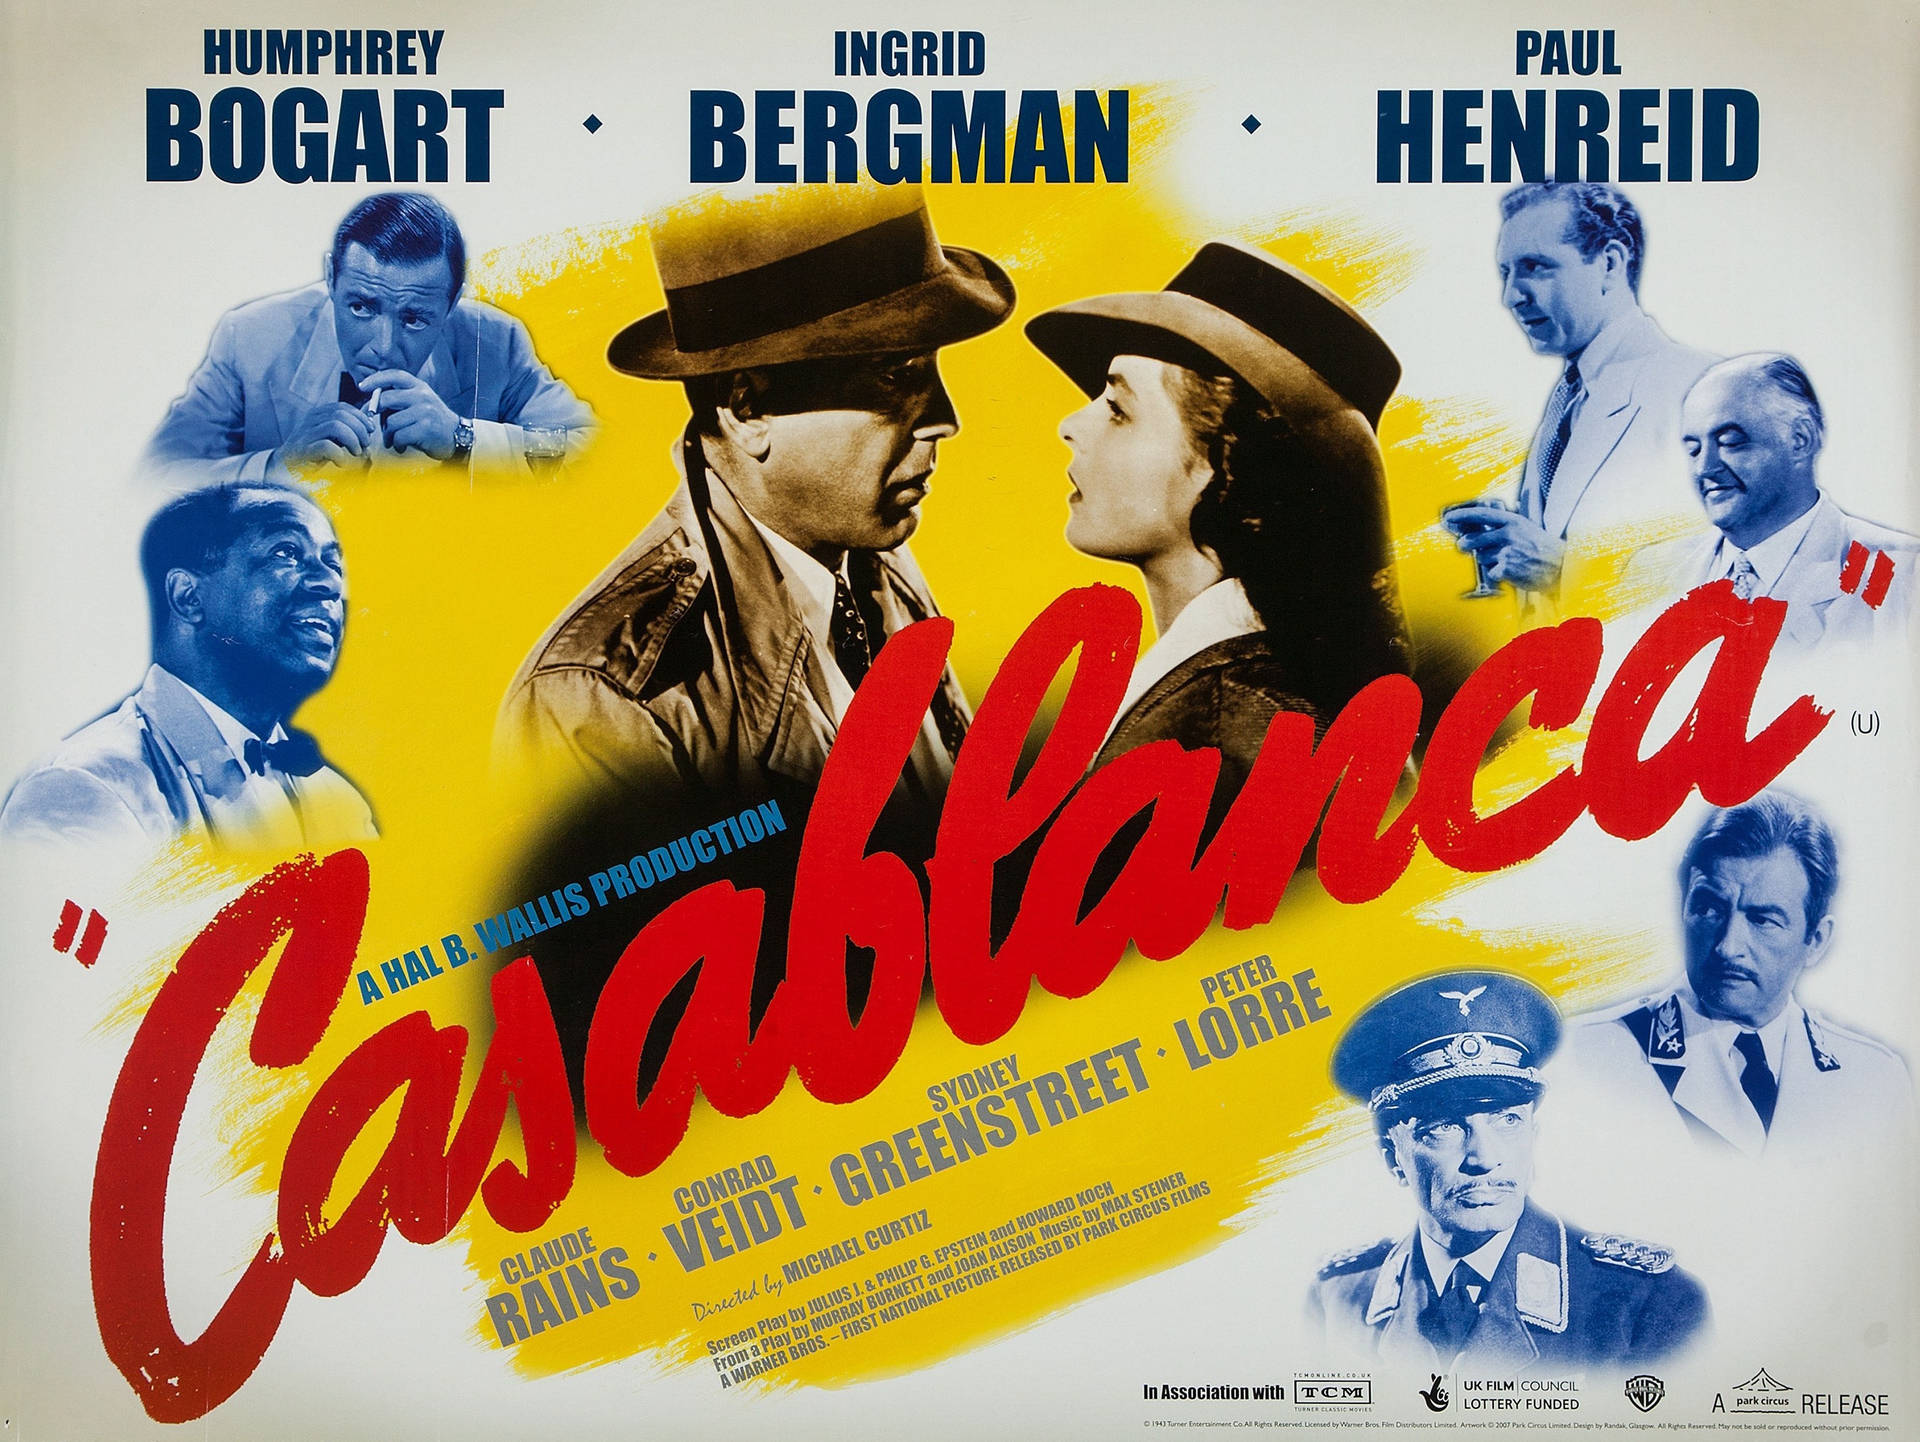 Póstervintage De La Película Casablanca Fondo de pantalla